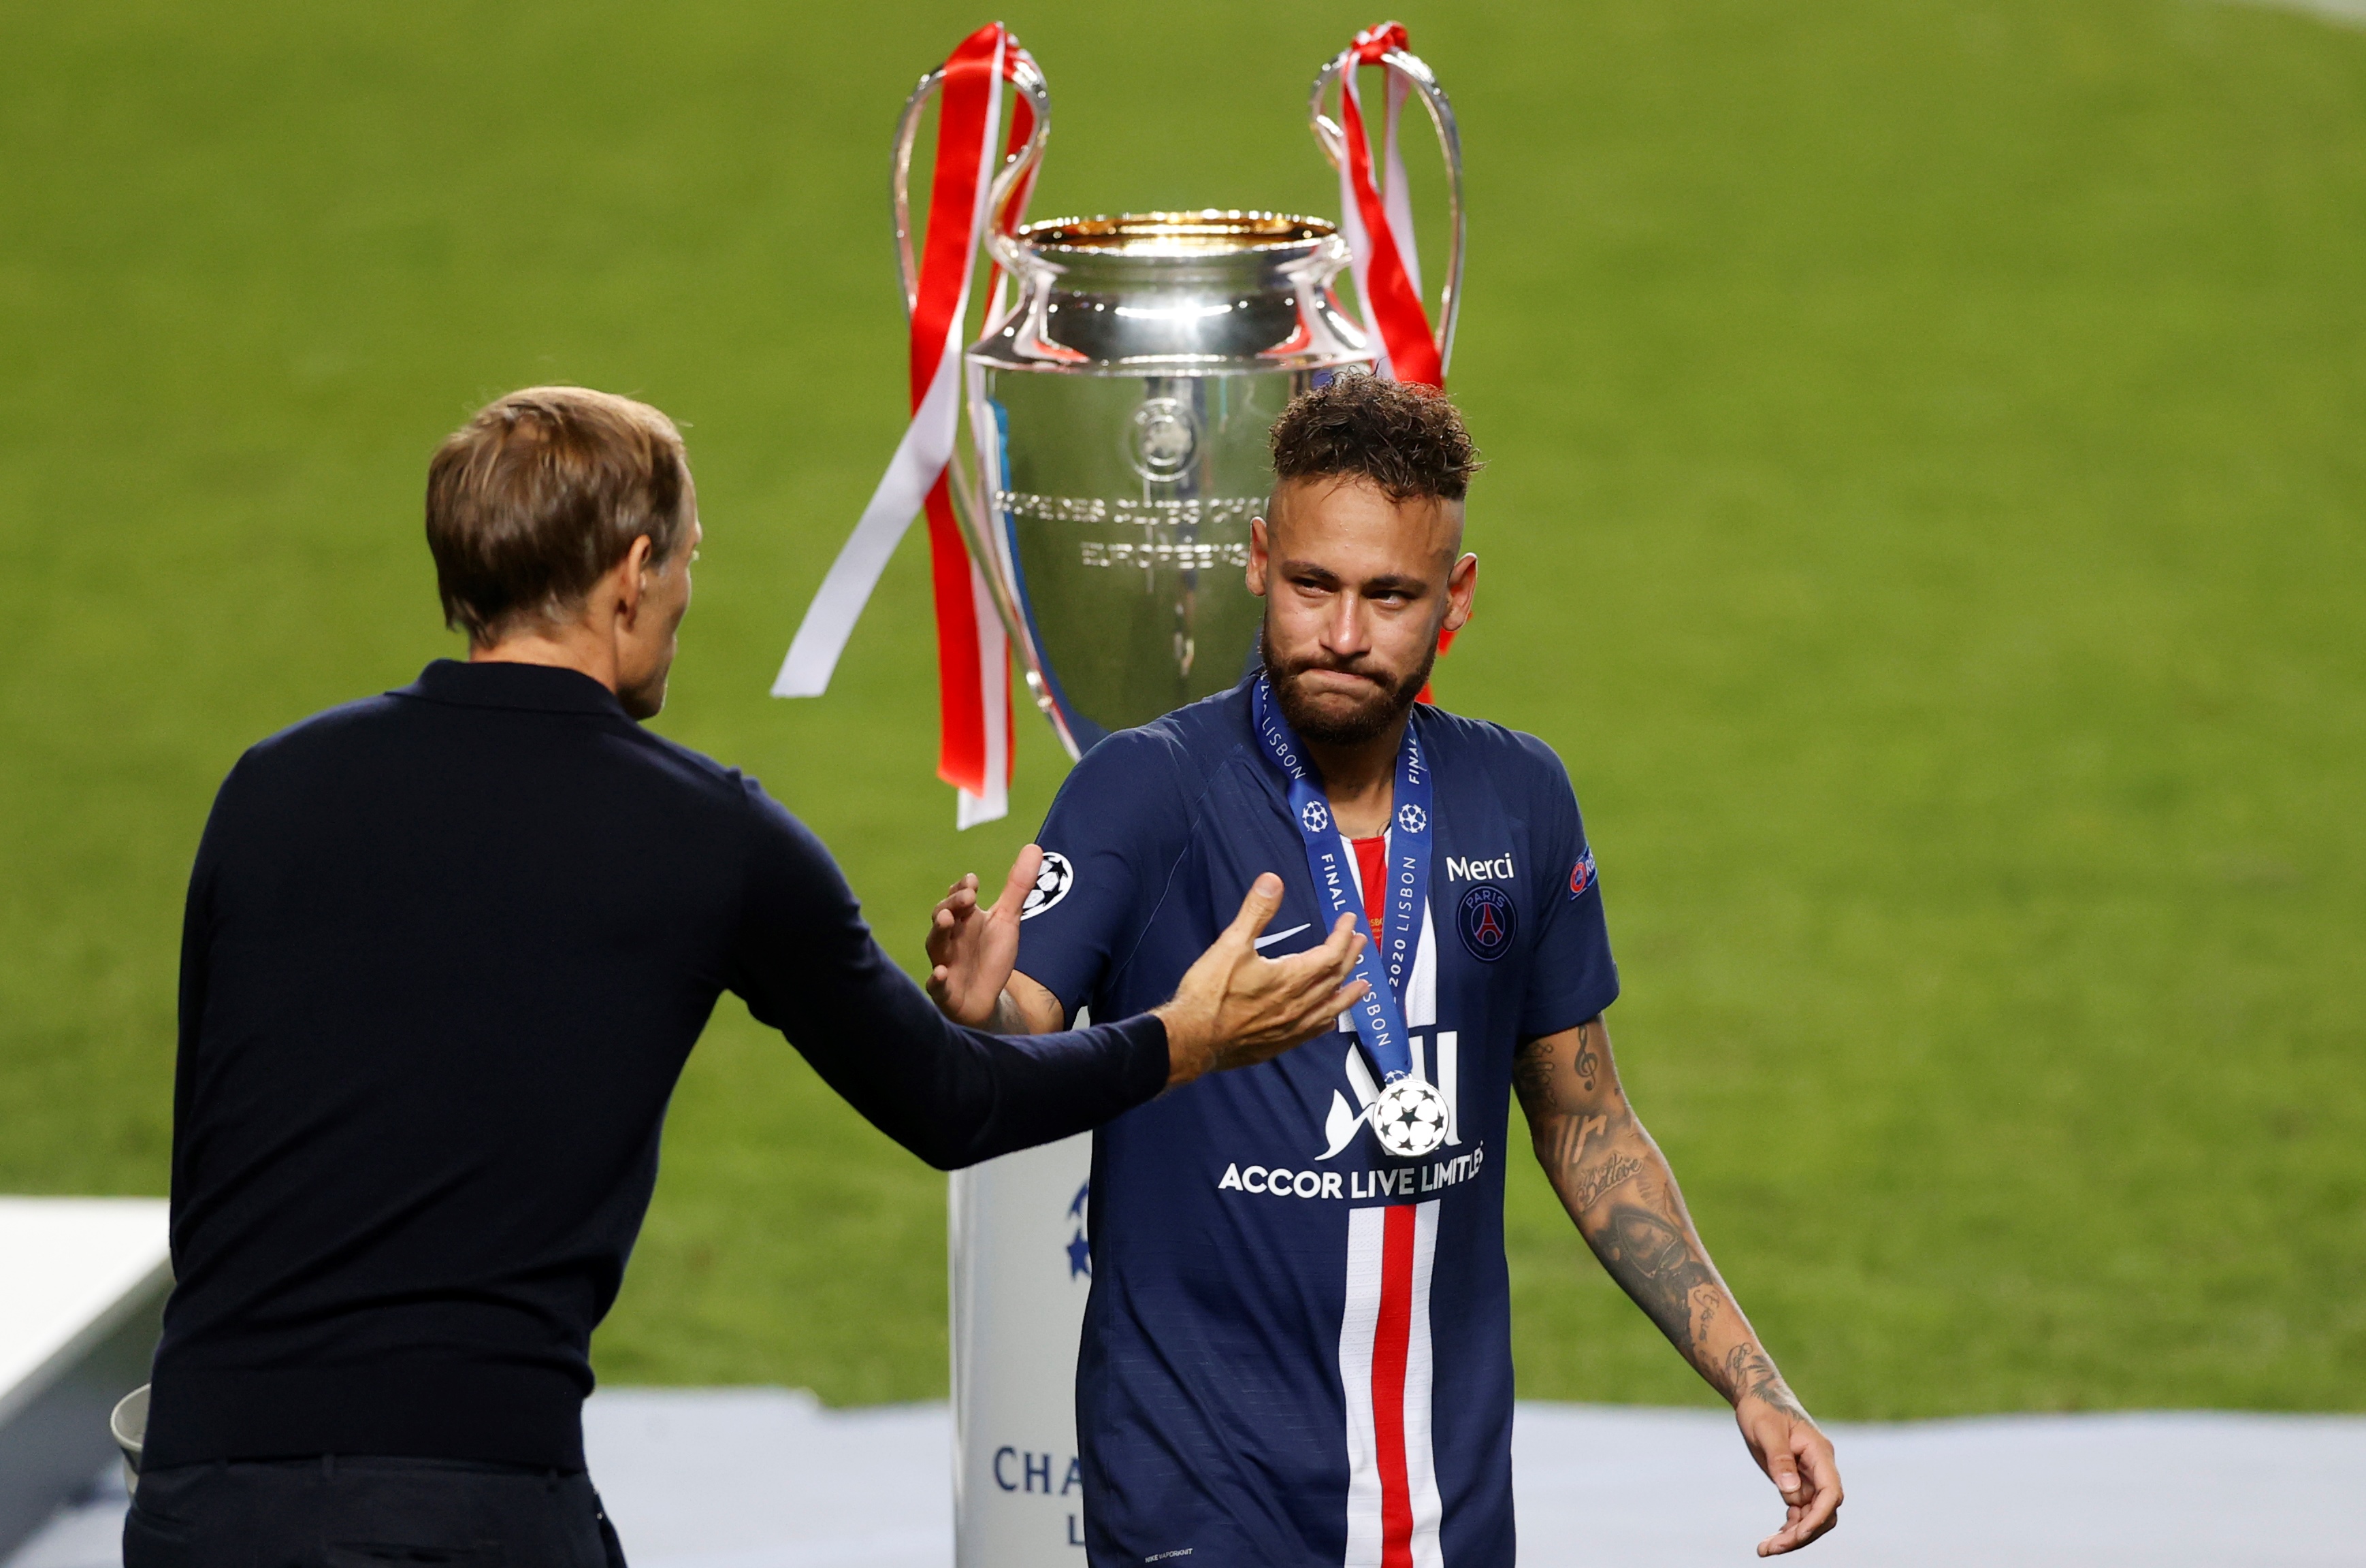 Neymar com a medalha de vice-campeão da Champions League 2019/20